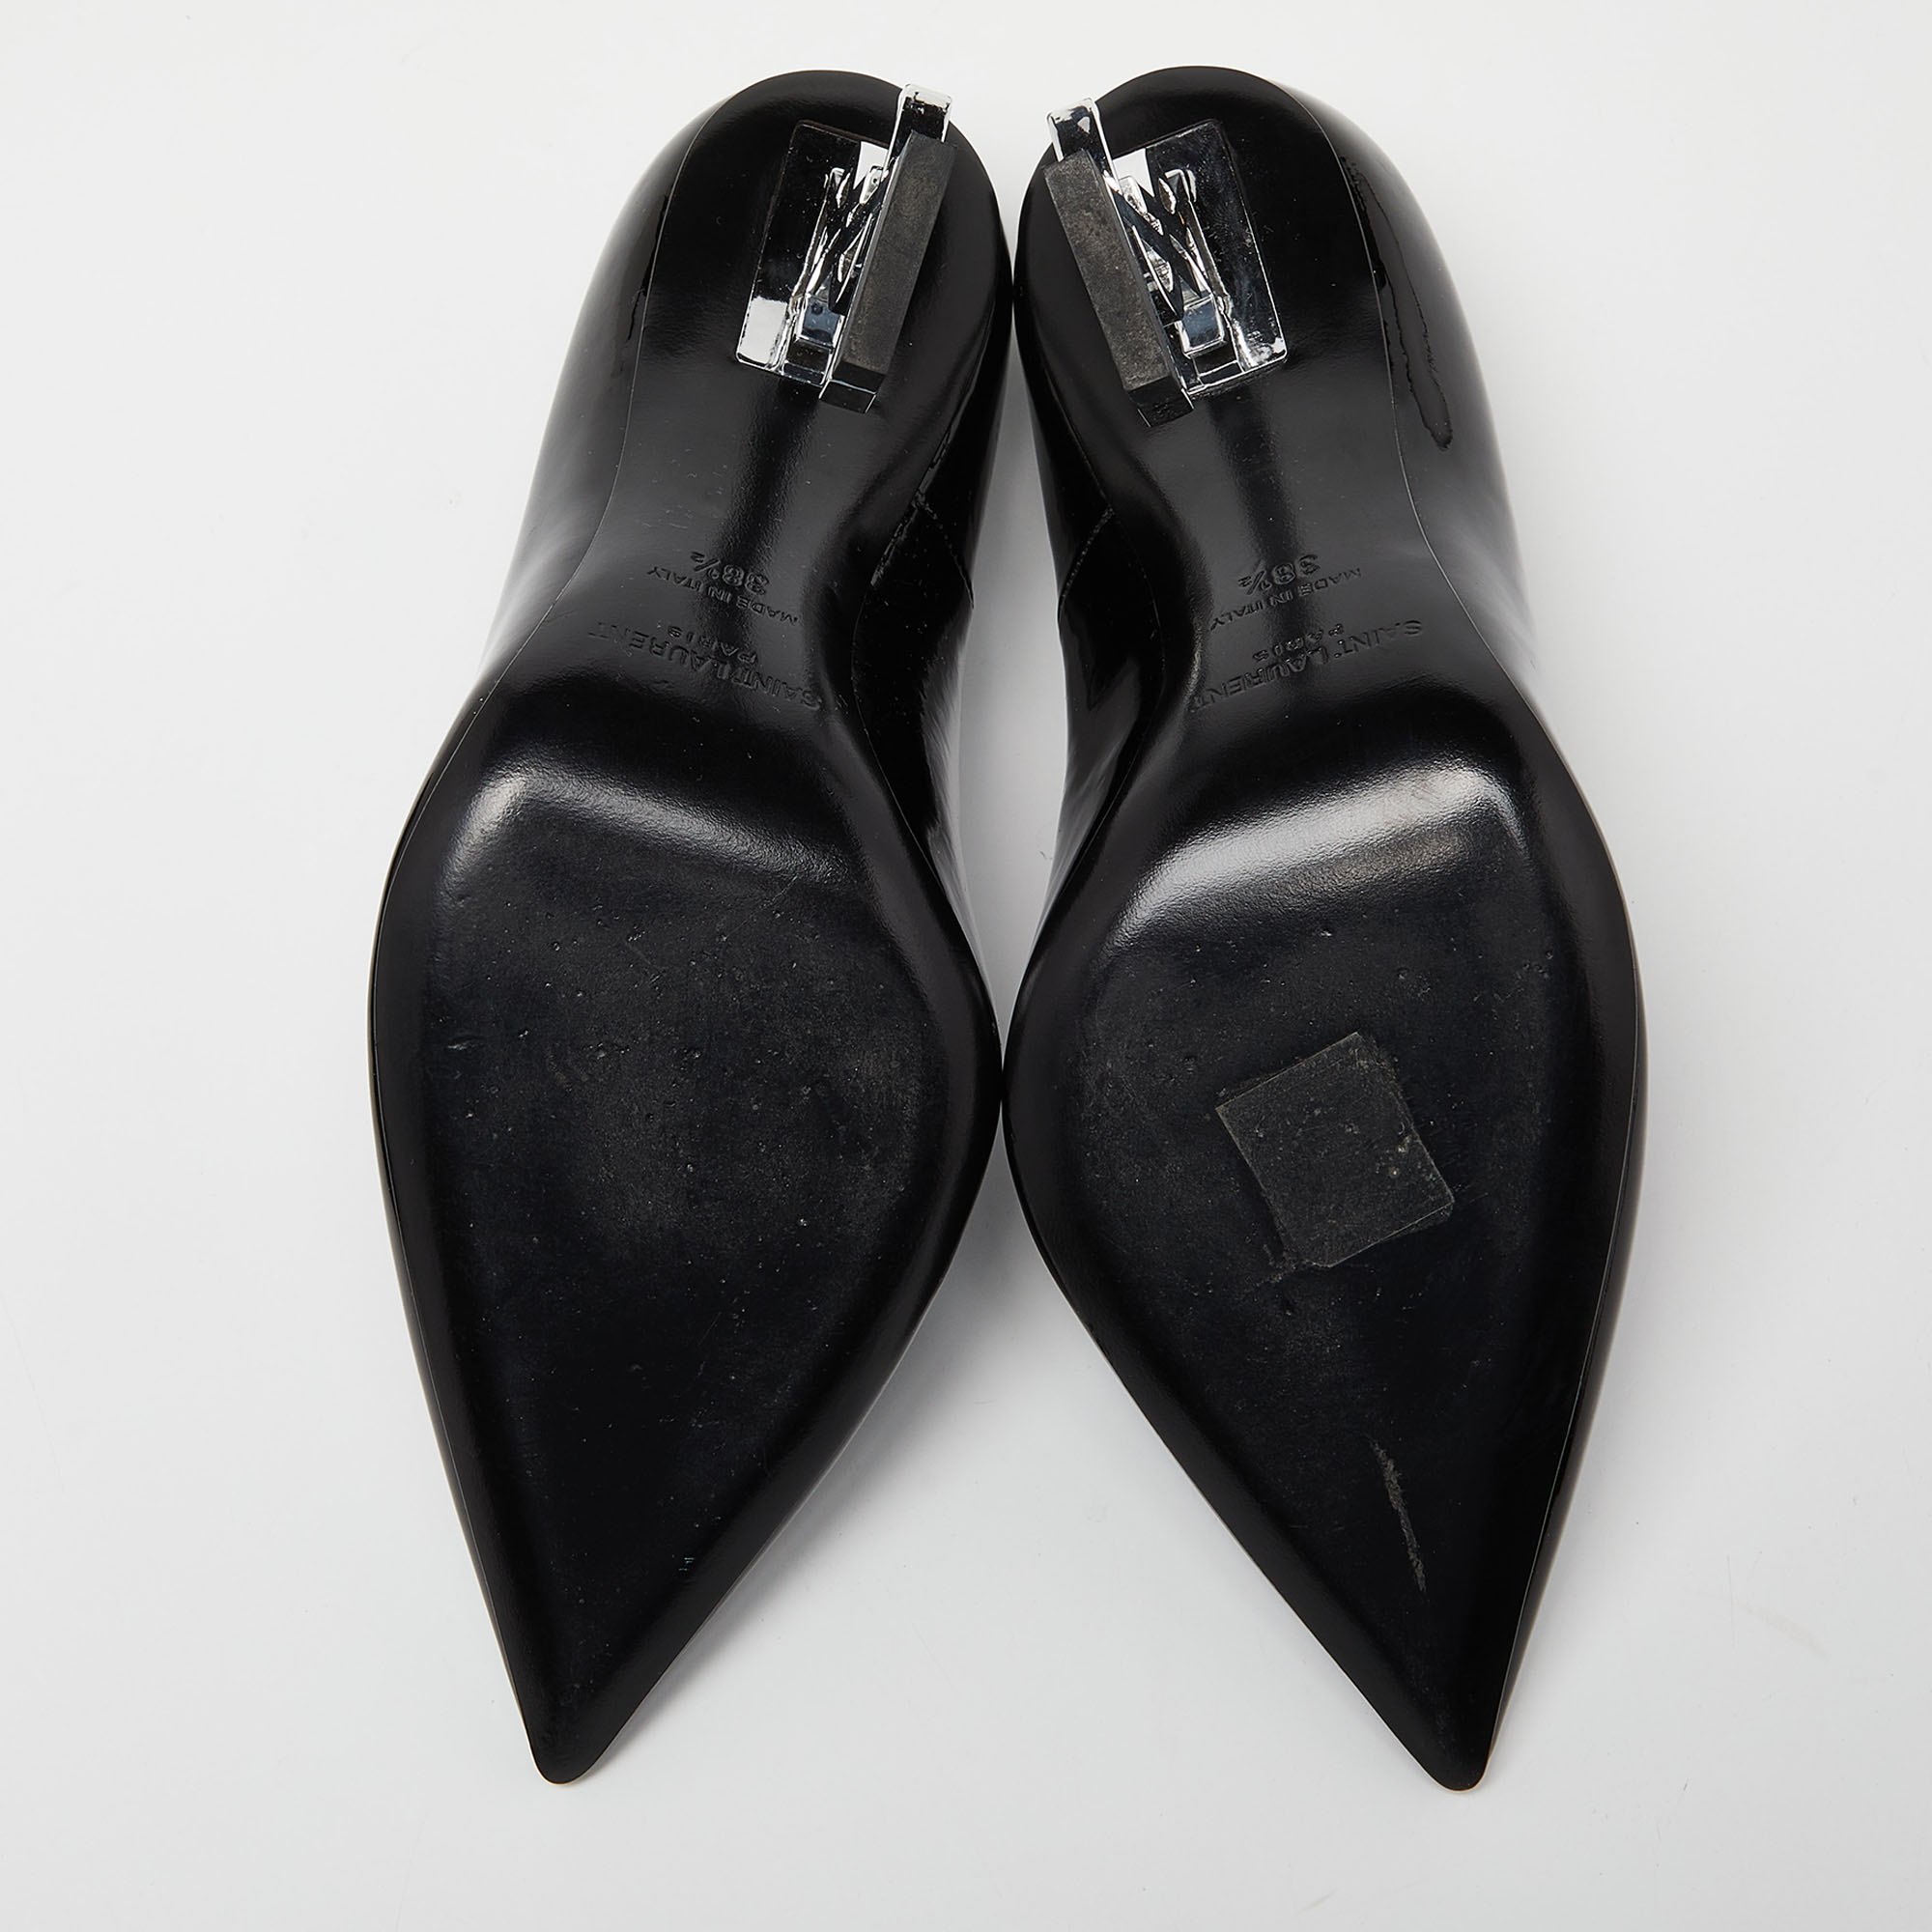 Saint Laurent Black Patent Leather Opyum Pumps Size 38.5